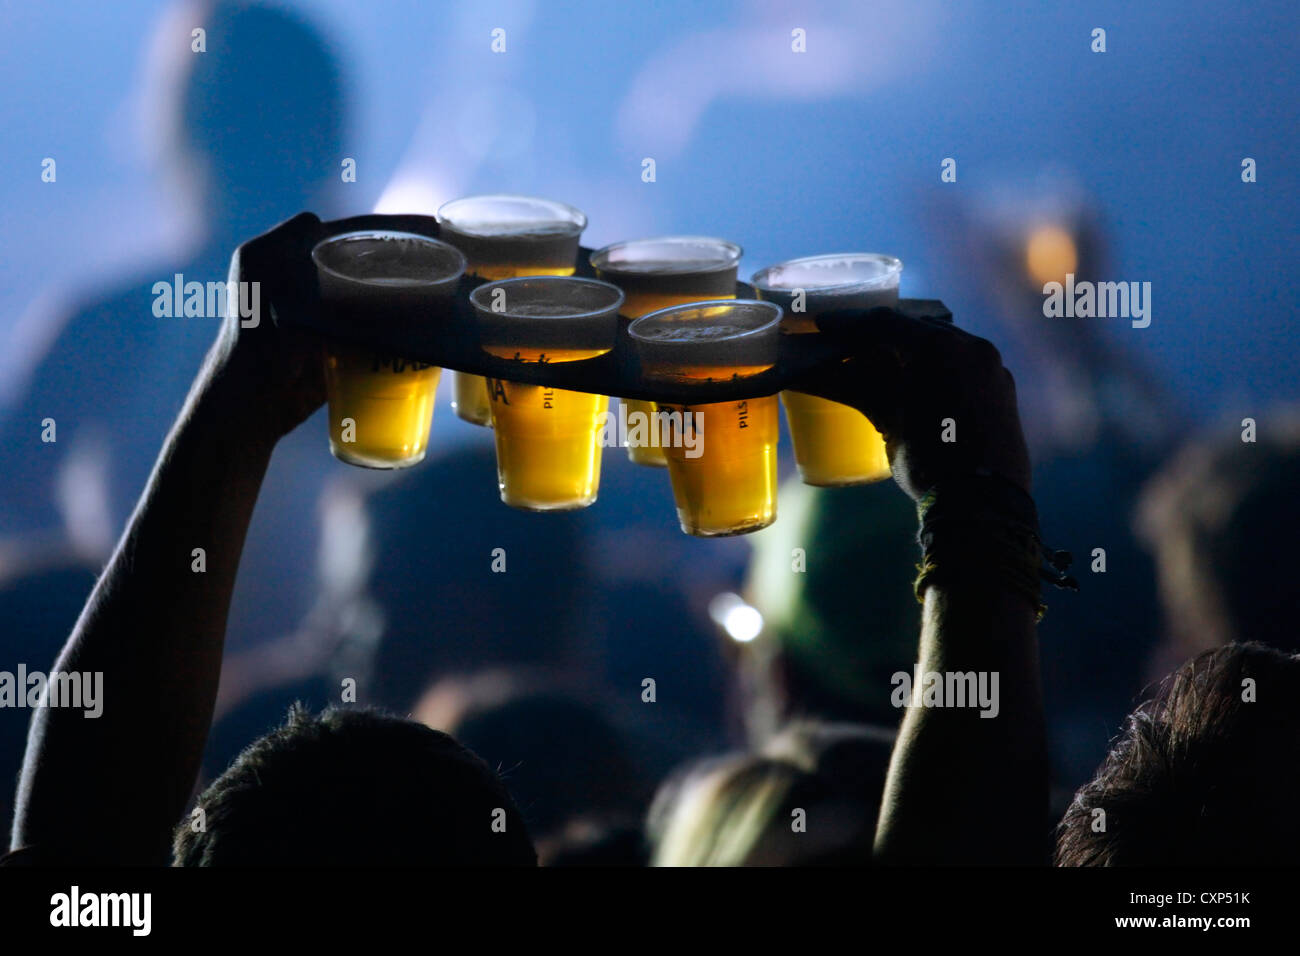 Ambiente durante un concierto de rock en vivo y el hombre llevando las pintas de cerveza en vasos de plástico a los amigos de los espectadores / multitud, Bélgica Foto de stock